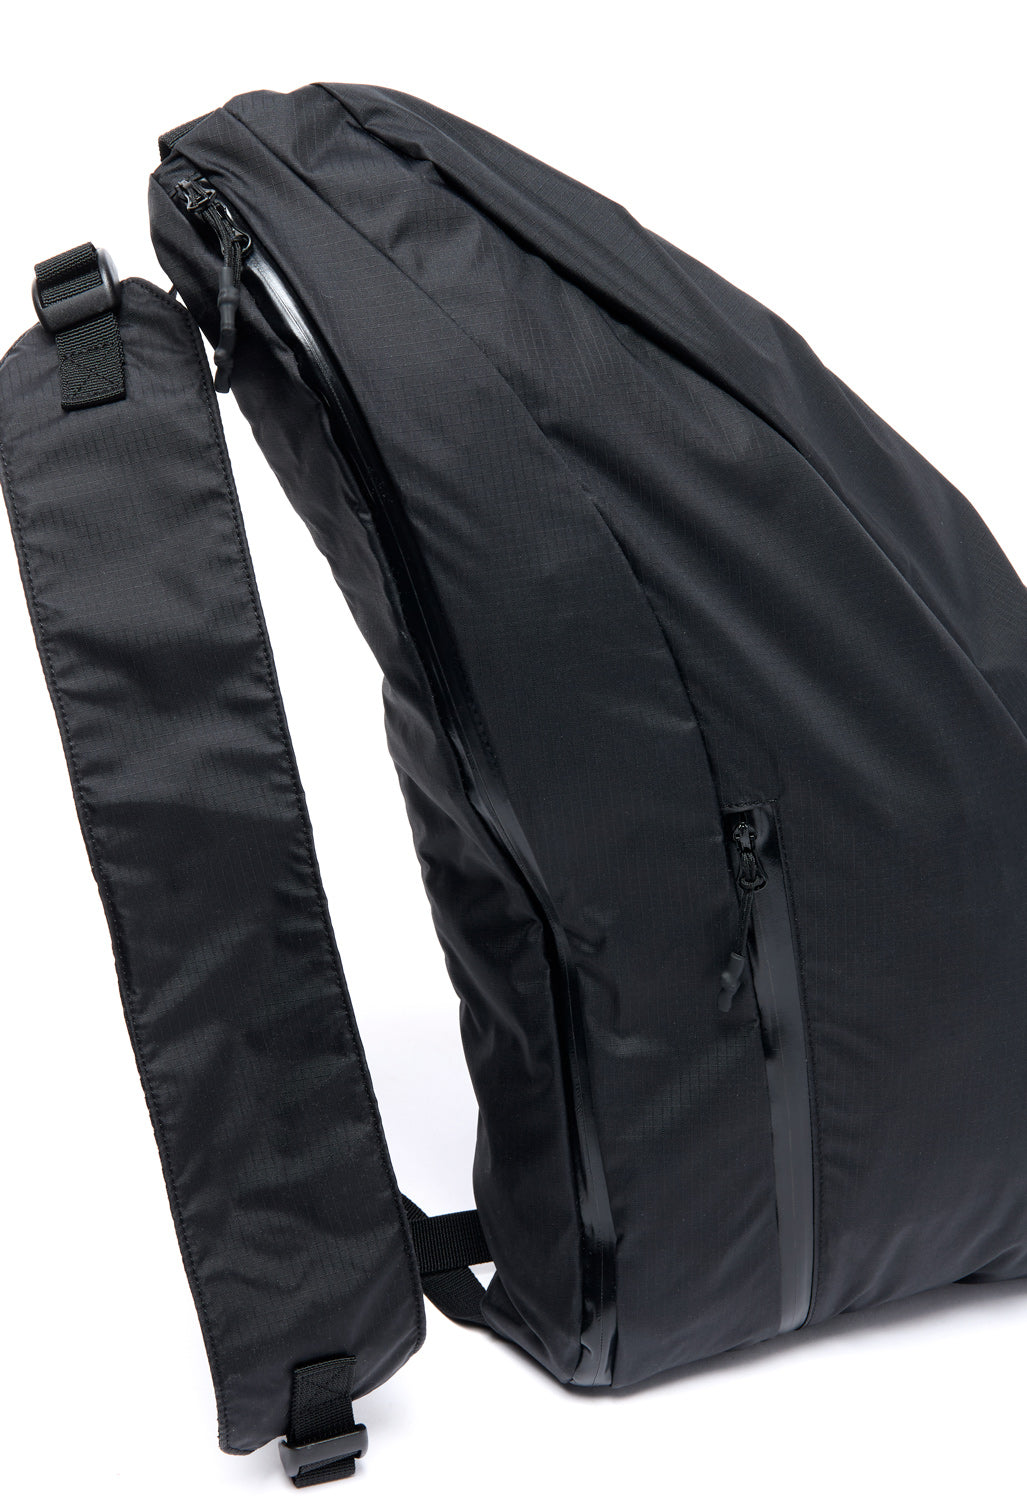 Wrap Shoulder Bag - Black